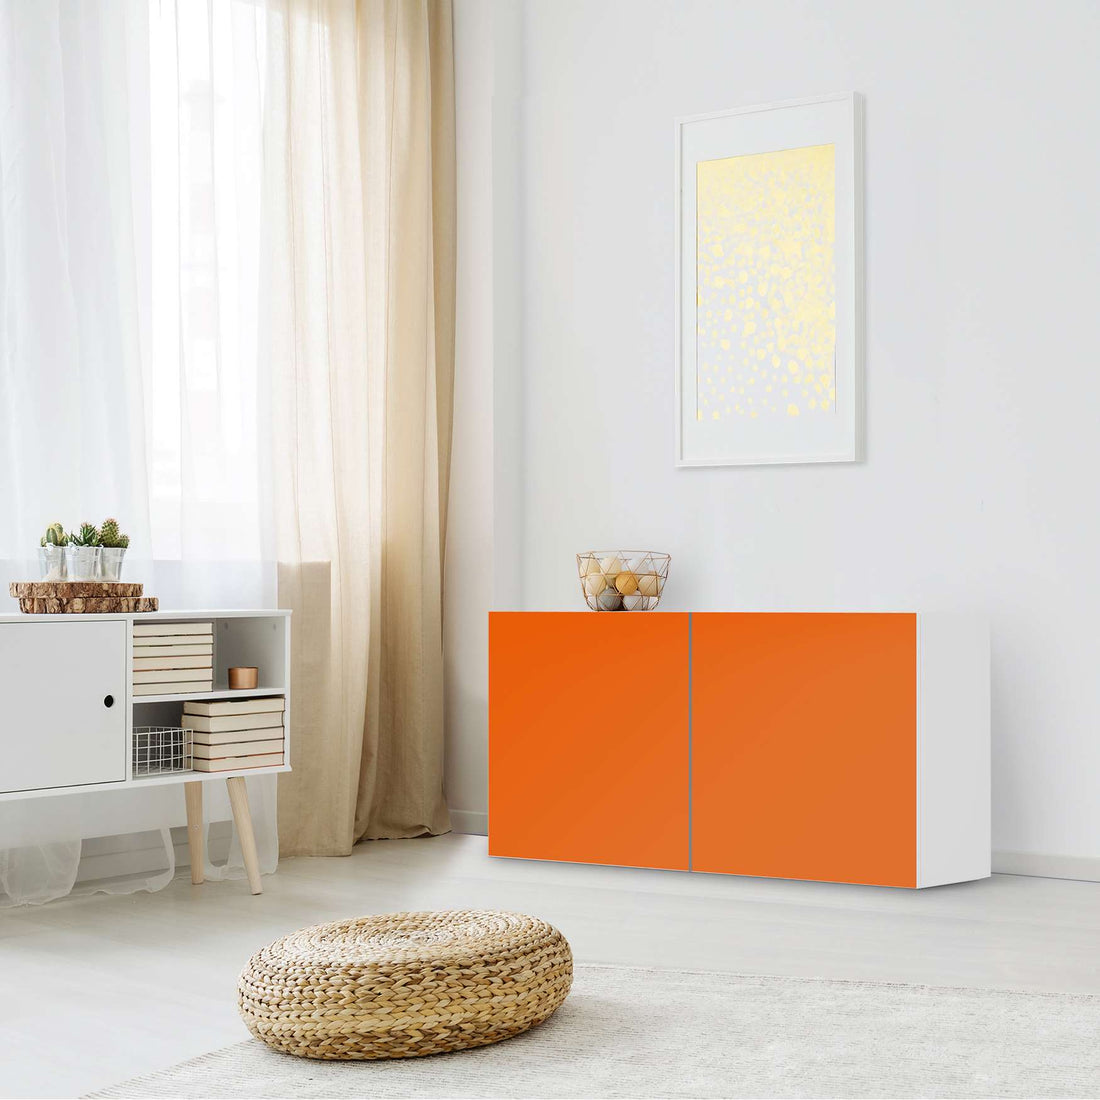 Folie für Möbel Orange Dark - IKEA Besta Regal Quer 2 Türen - Wohnzimmer